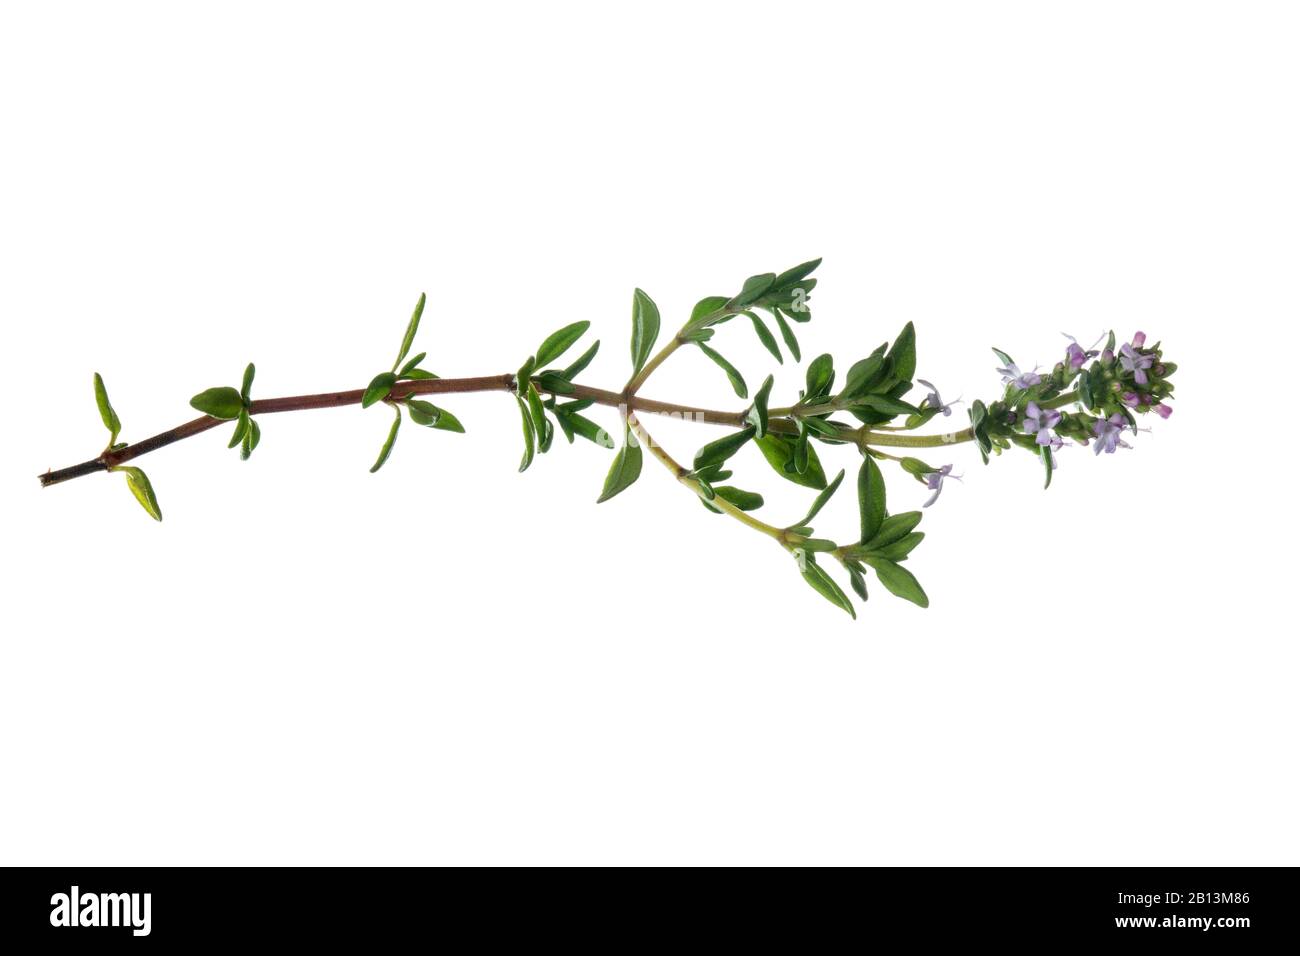 Thym de jardin, thym anglais, thym commun (Thymus vulgaris), brindille florissante, découpe avec règle Banque D'Images